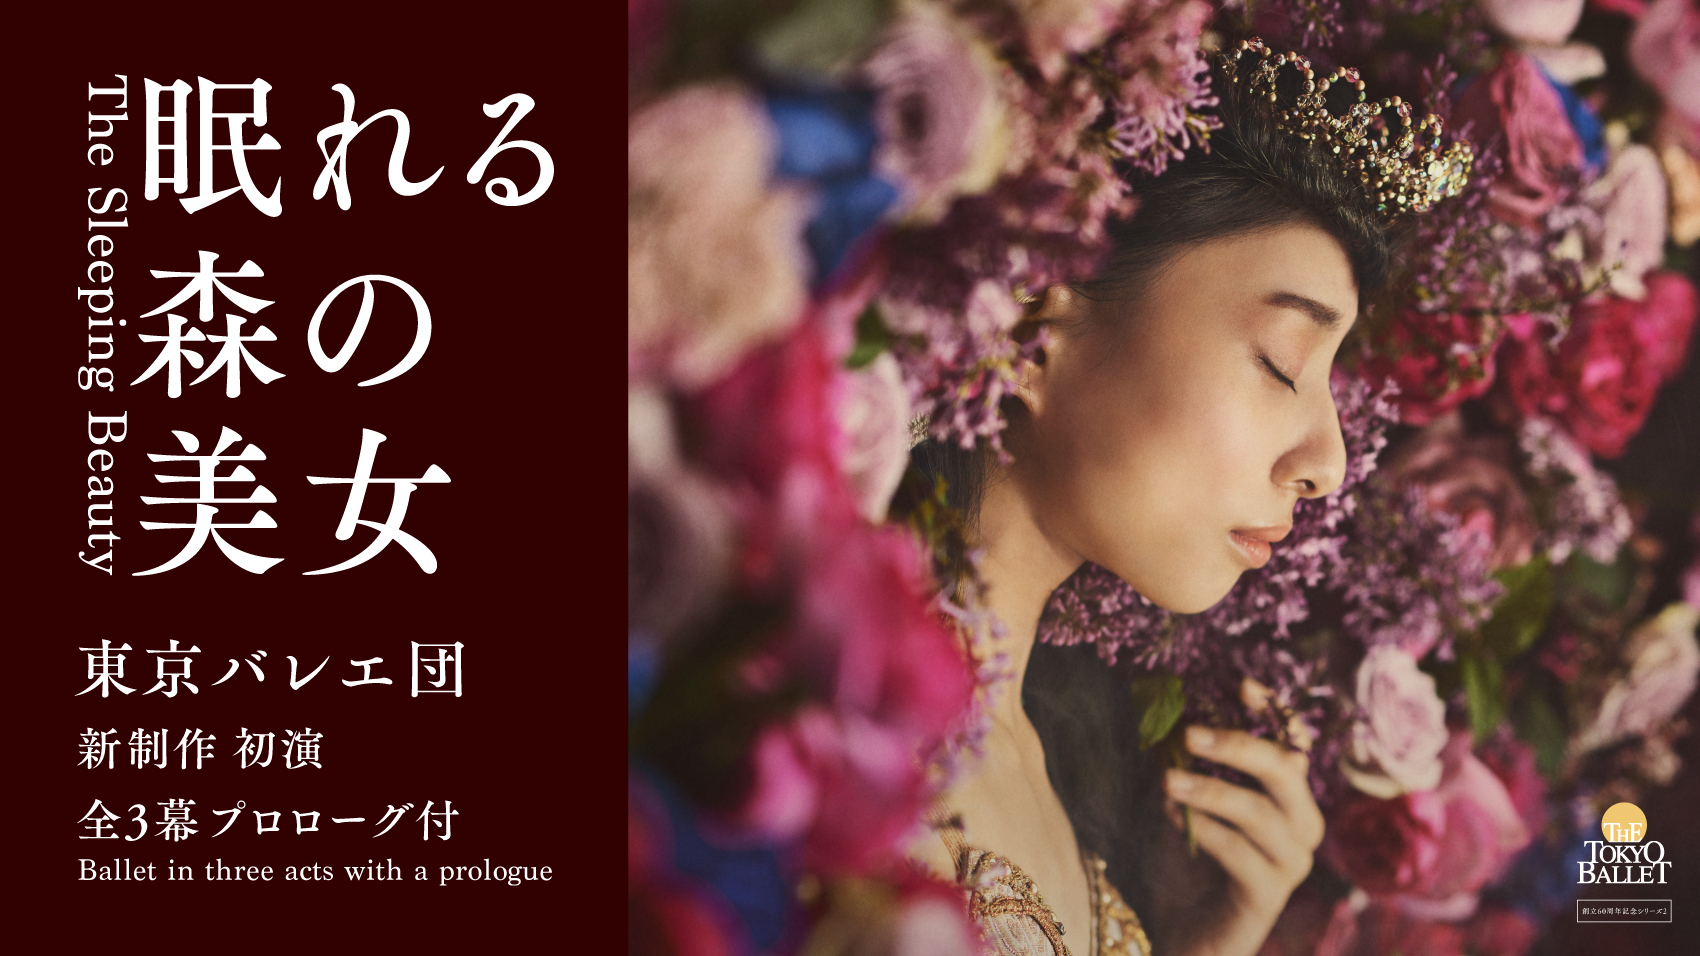 東京バレエ団、新制作『眠れる森の美女』の上演が決定 創立60周年記念